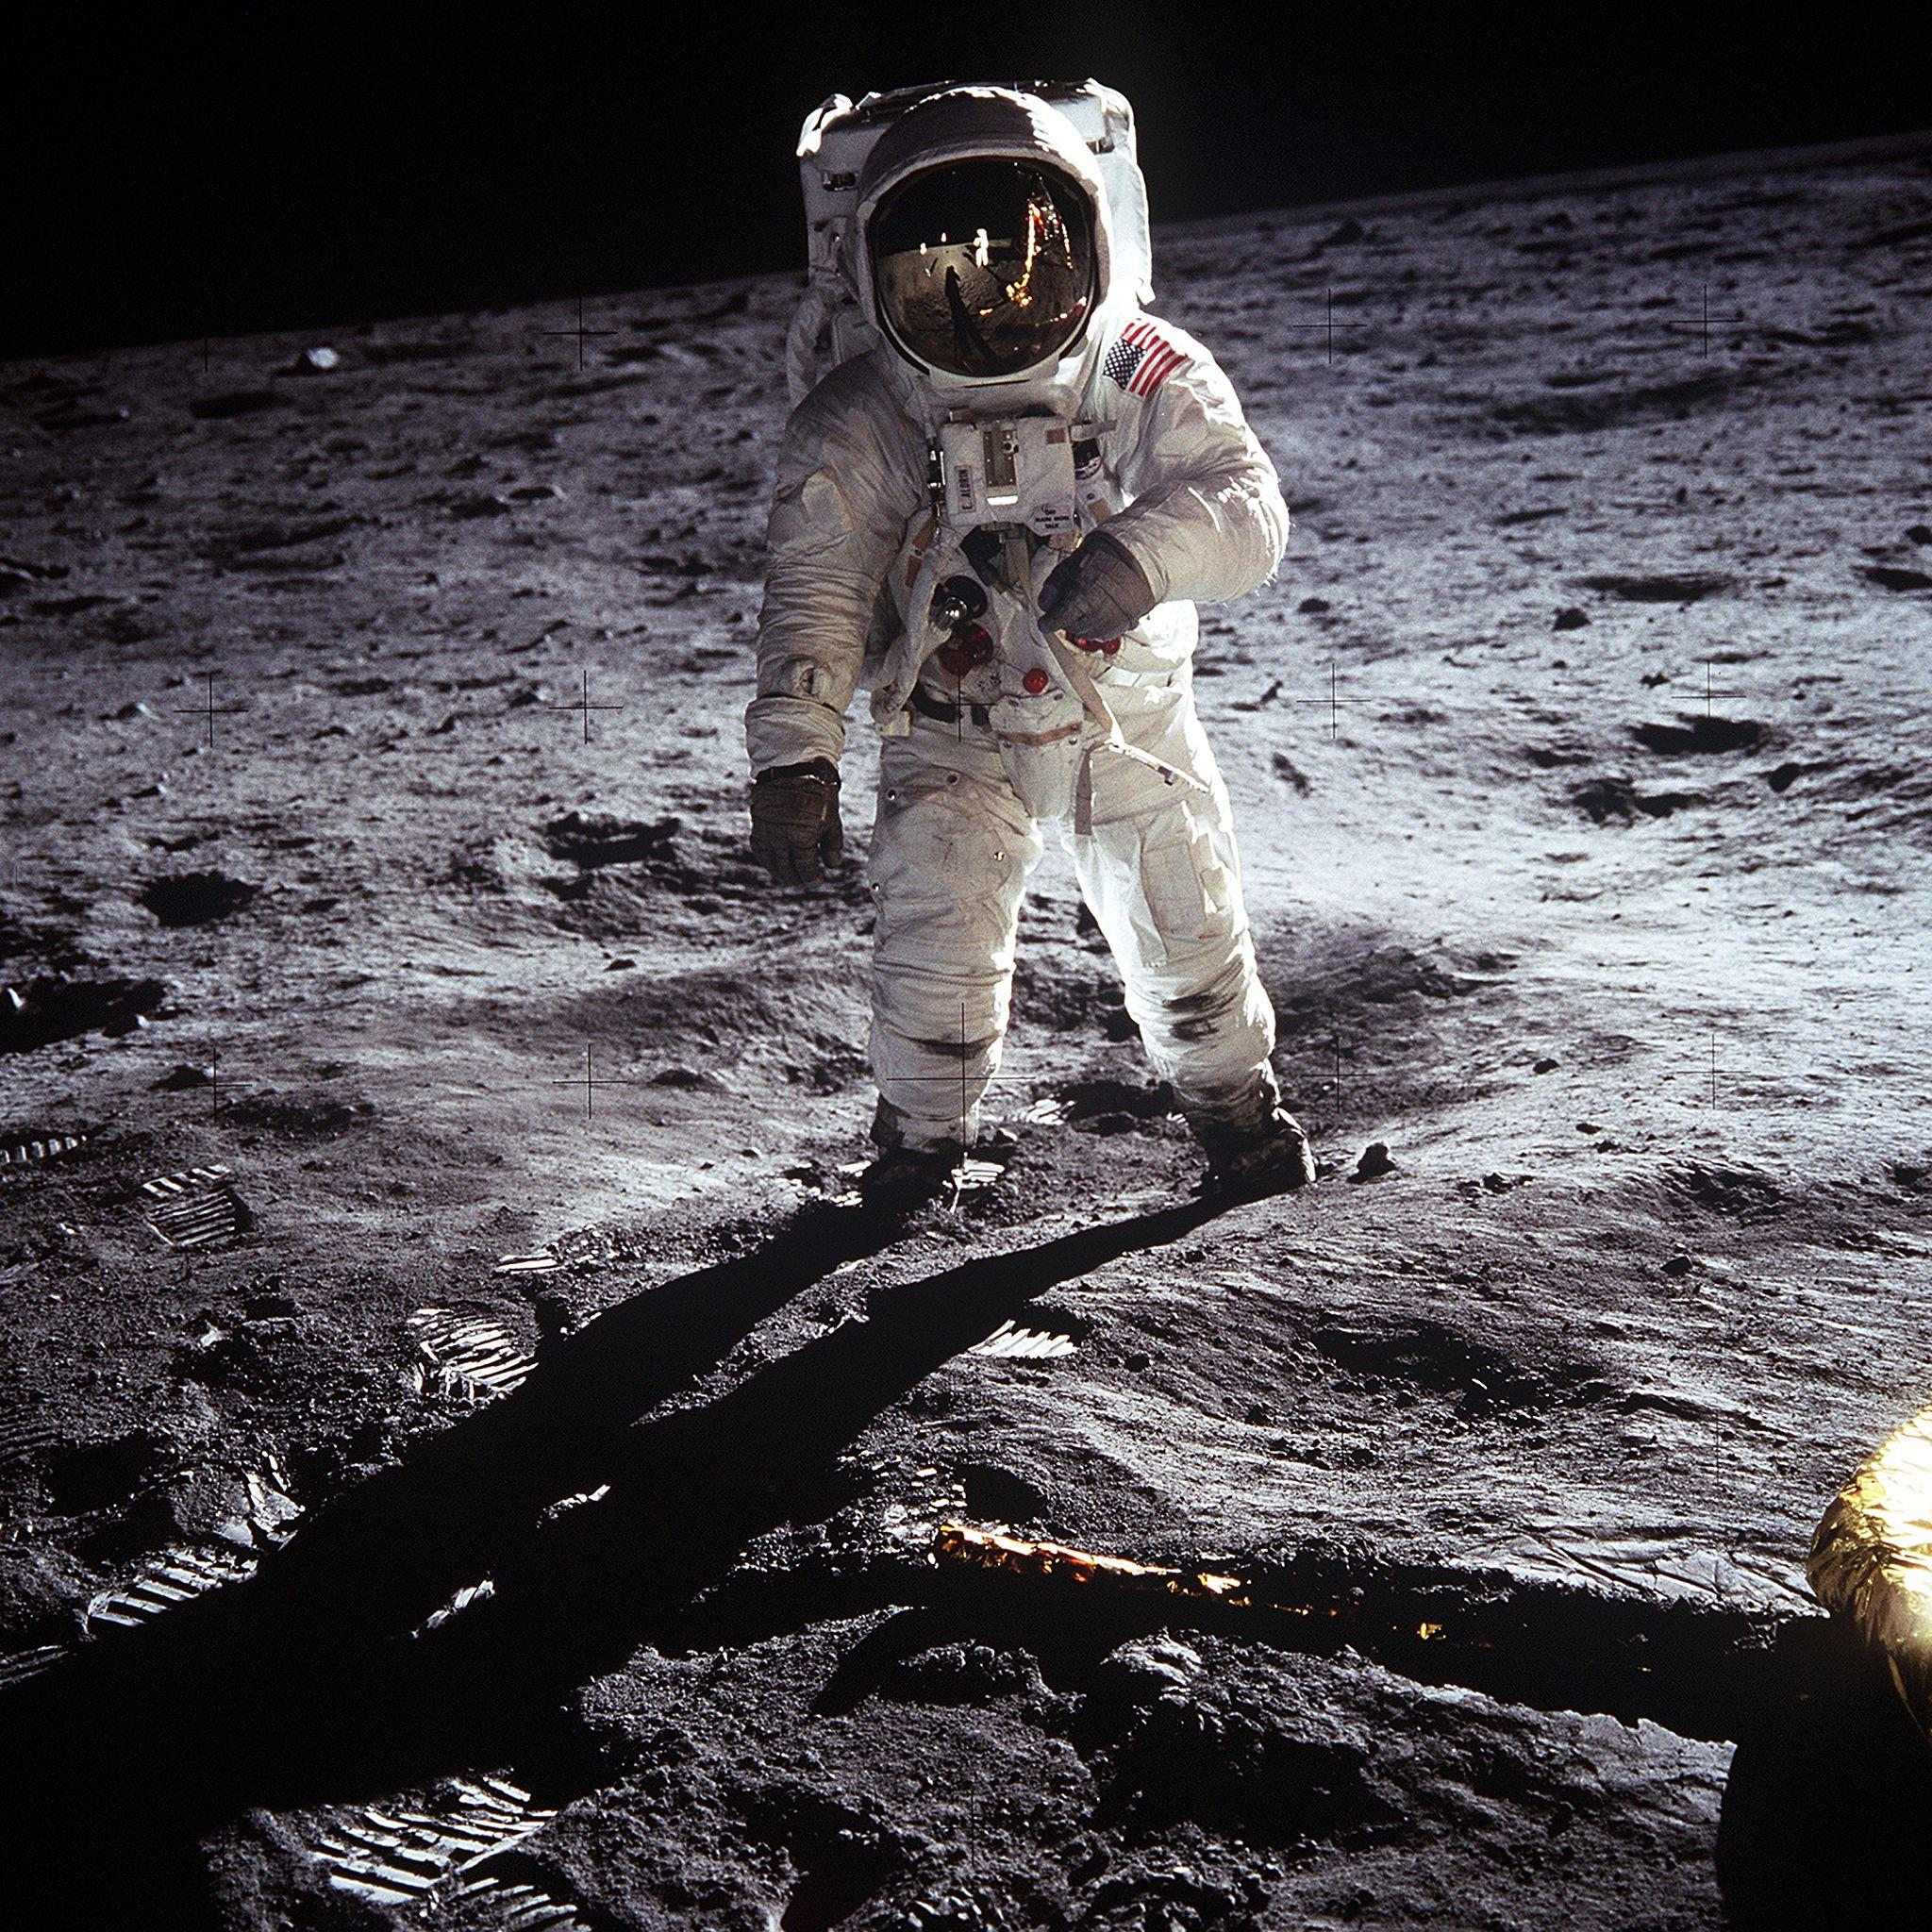 Buzz Aldrin walks on the moon on July 20, 1969. (NASA)